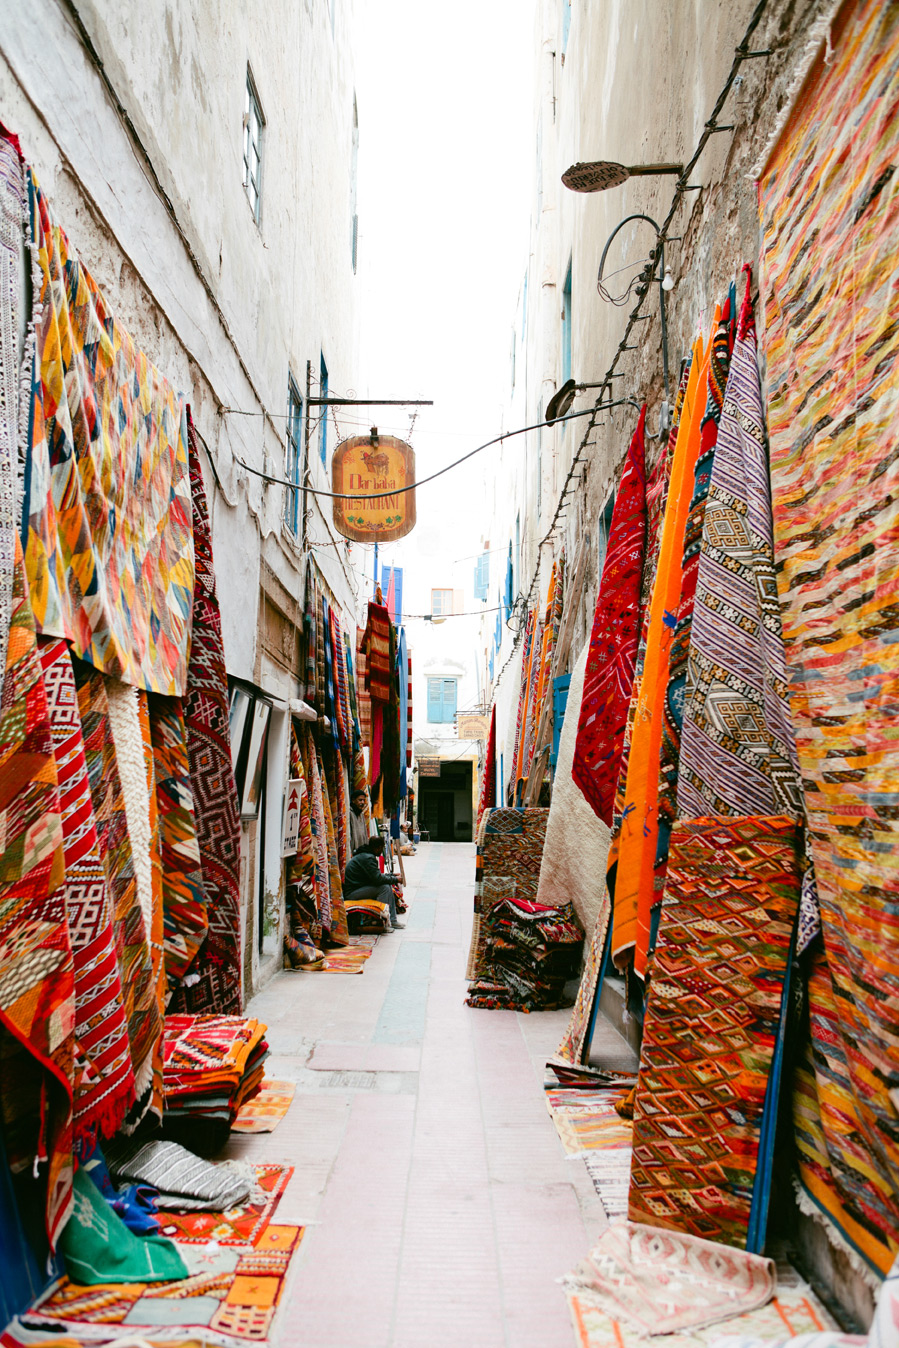 Market in Essaouira